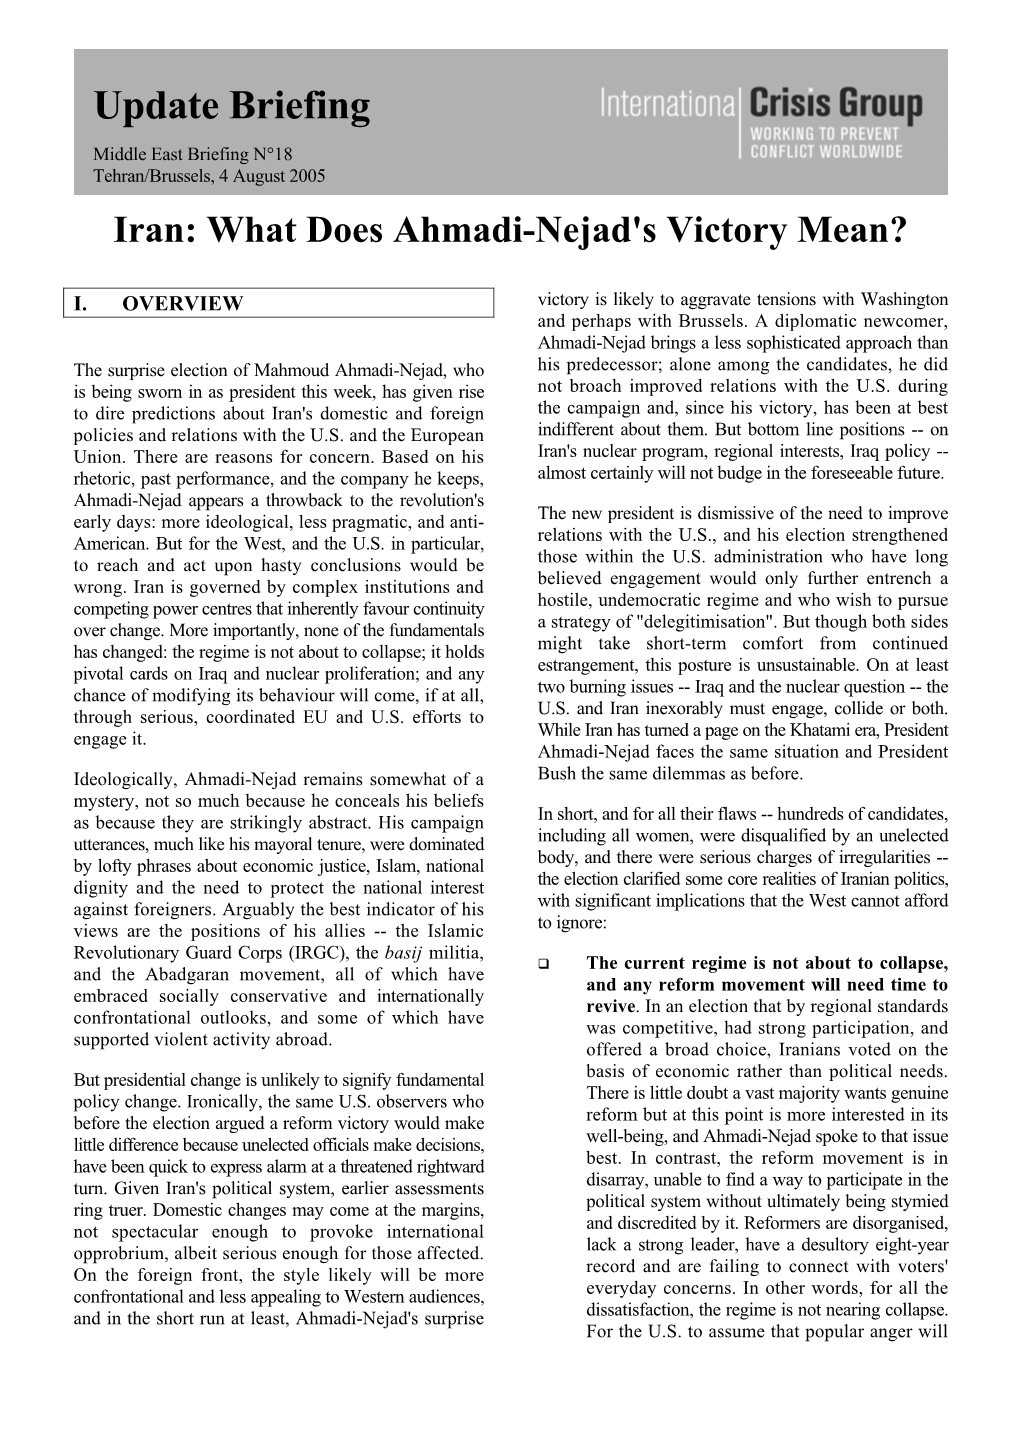 Update Briefing Middle East Briefing N°18 Tehran/Brussels, 4 August 2005 Iran: What Does Ahmadi-Nejad's Victory Mean?